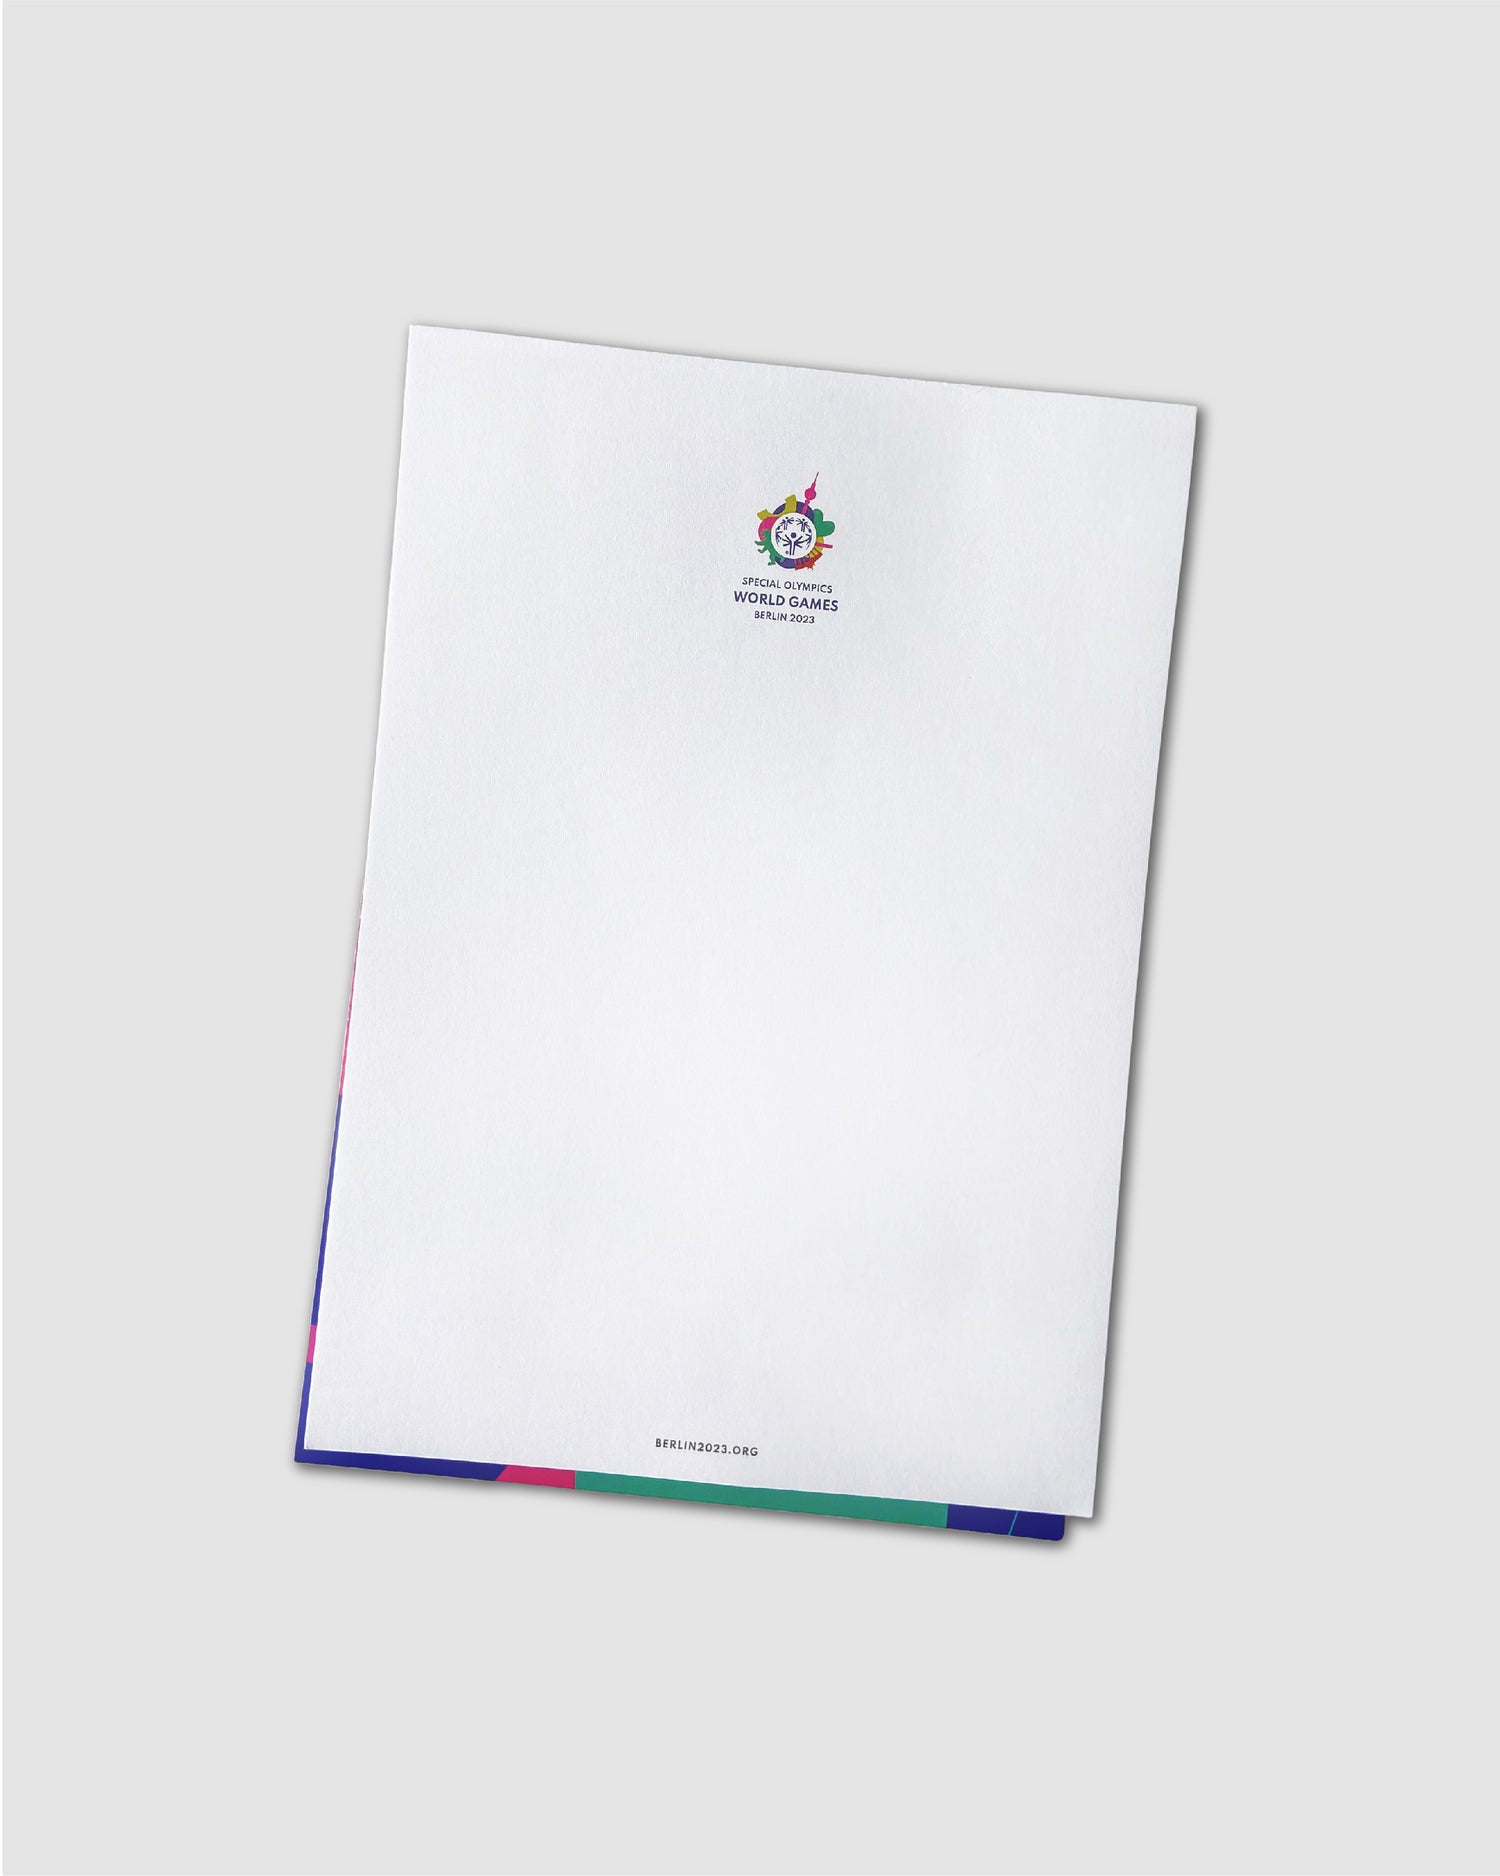 Innenansicht des Notizblocks. Weißes Papier mit kleinem buntem Special Olympics World Games 2023 Logo. 